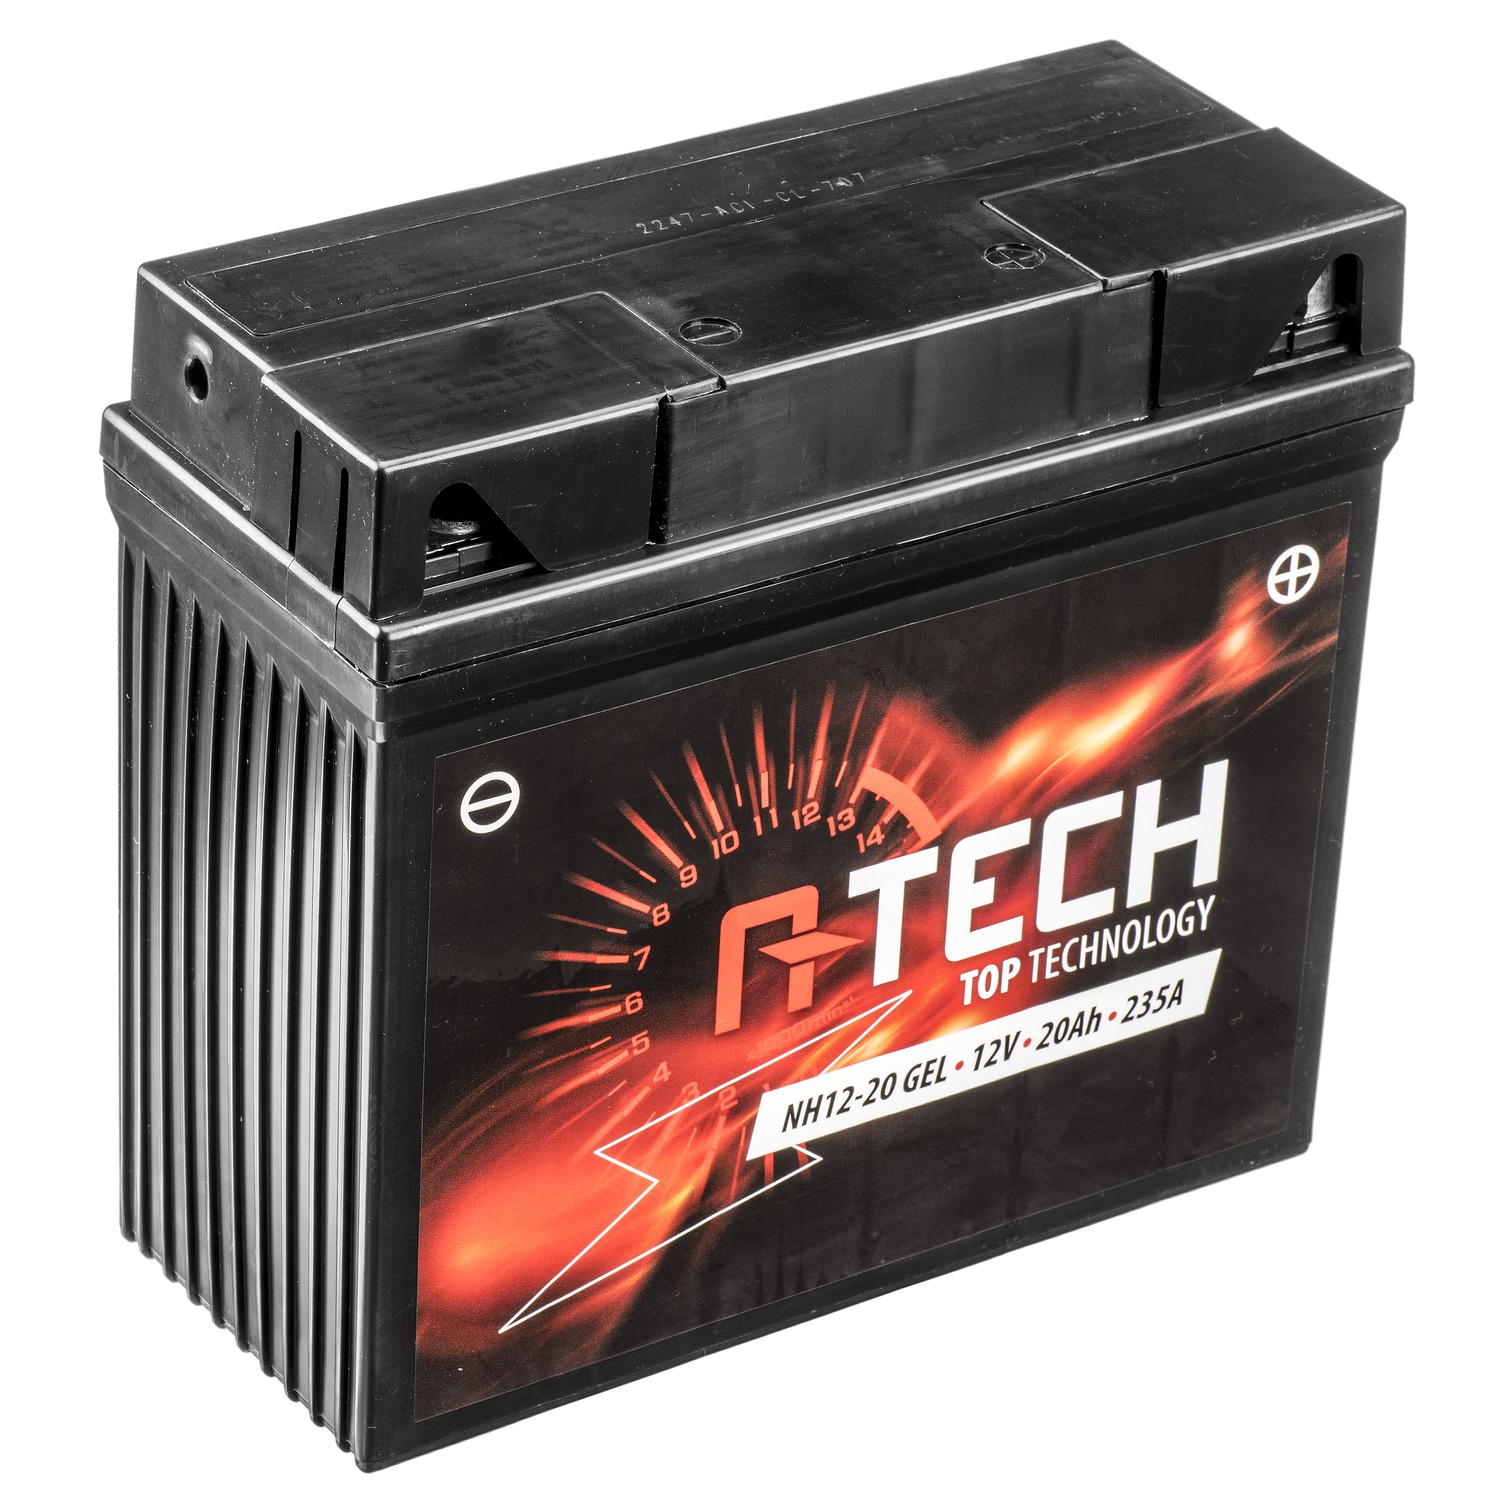 Obrázek produktu baterie 12V, NH12-20 GEL, 51913, 20Ah, 235A, 185x81x170, A-TECH (aktivovaná ve výrobě) 820632